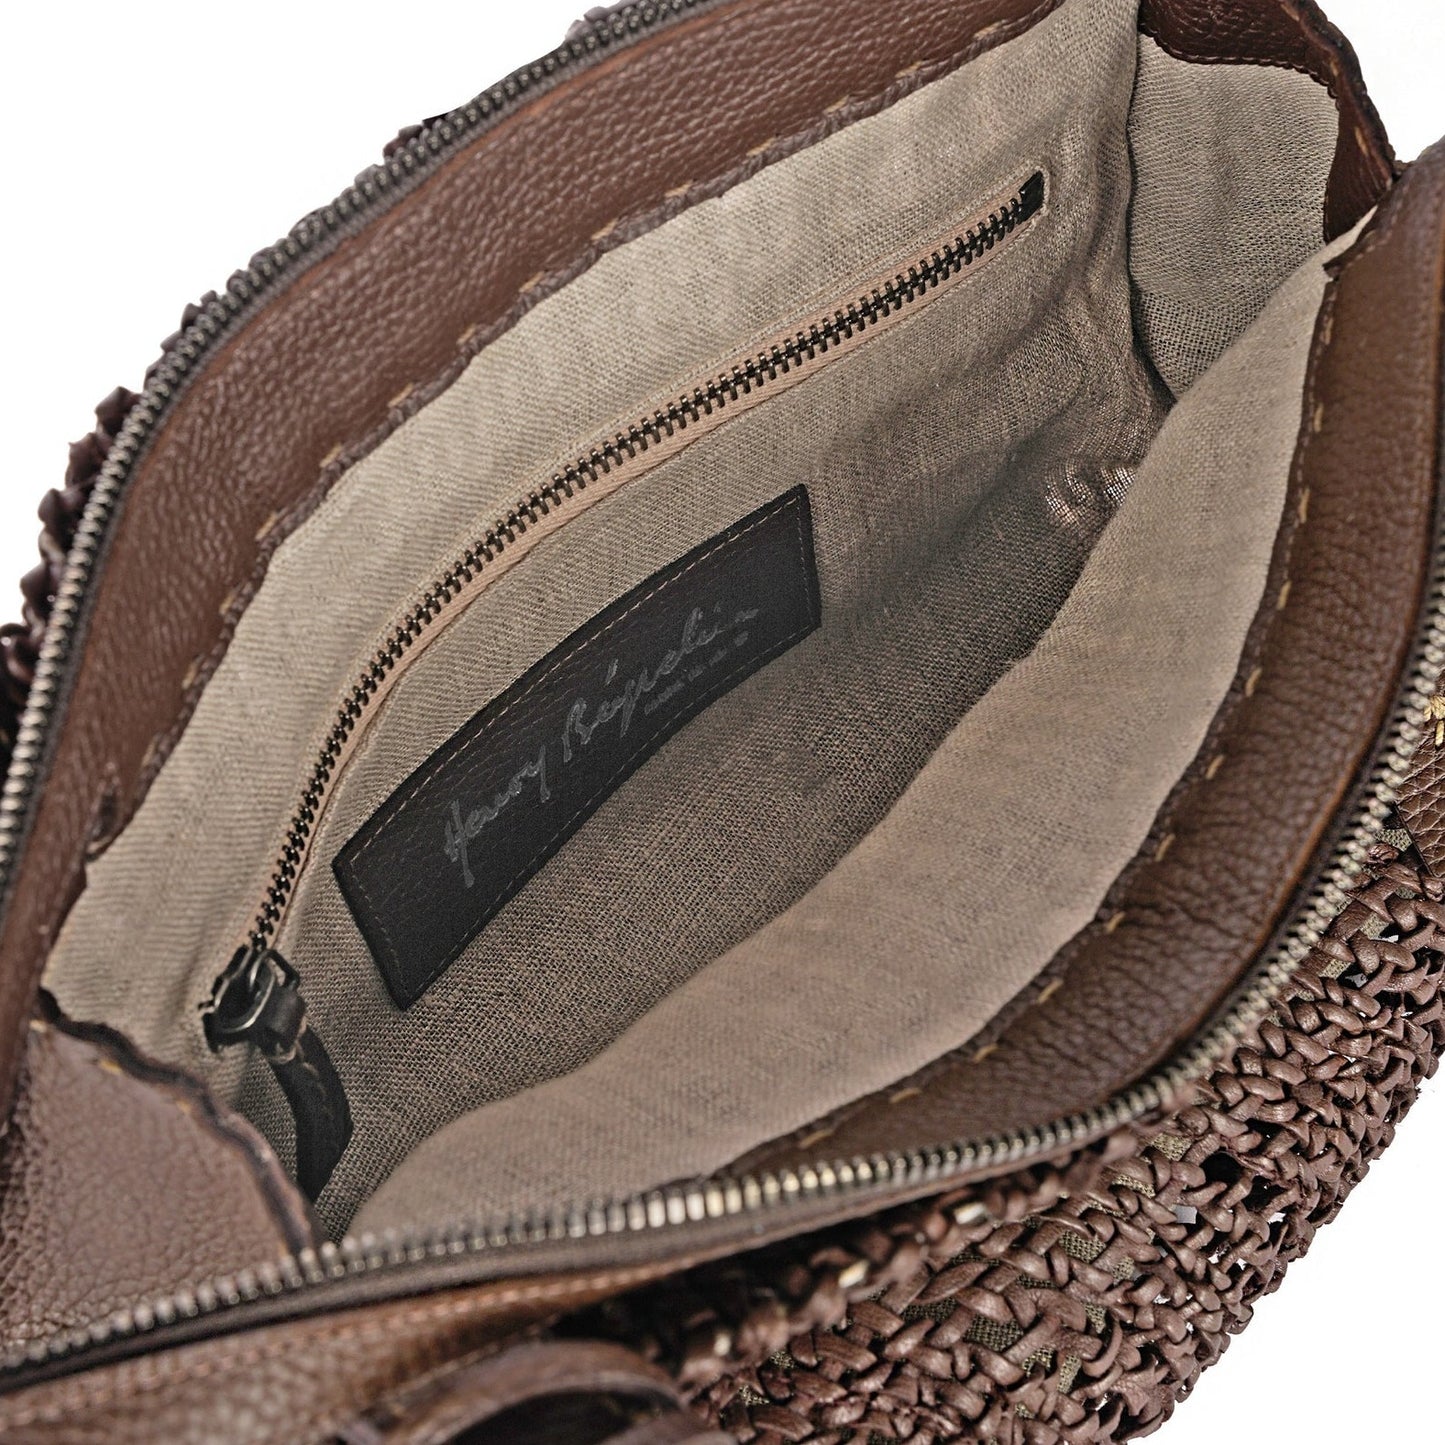 Sacca Boa Bag in Chestnut